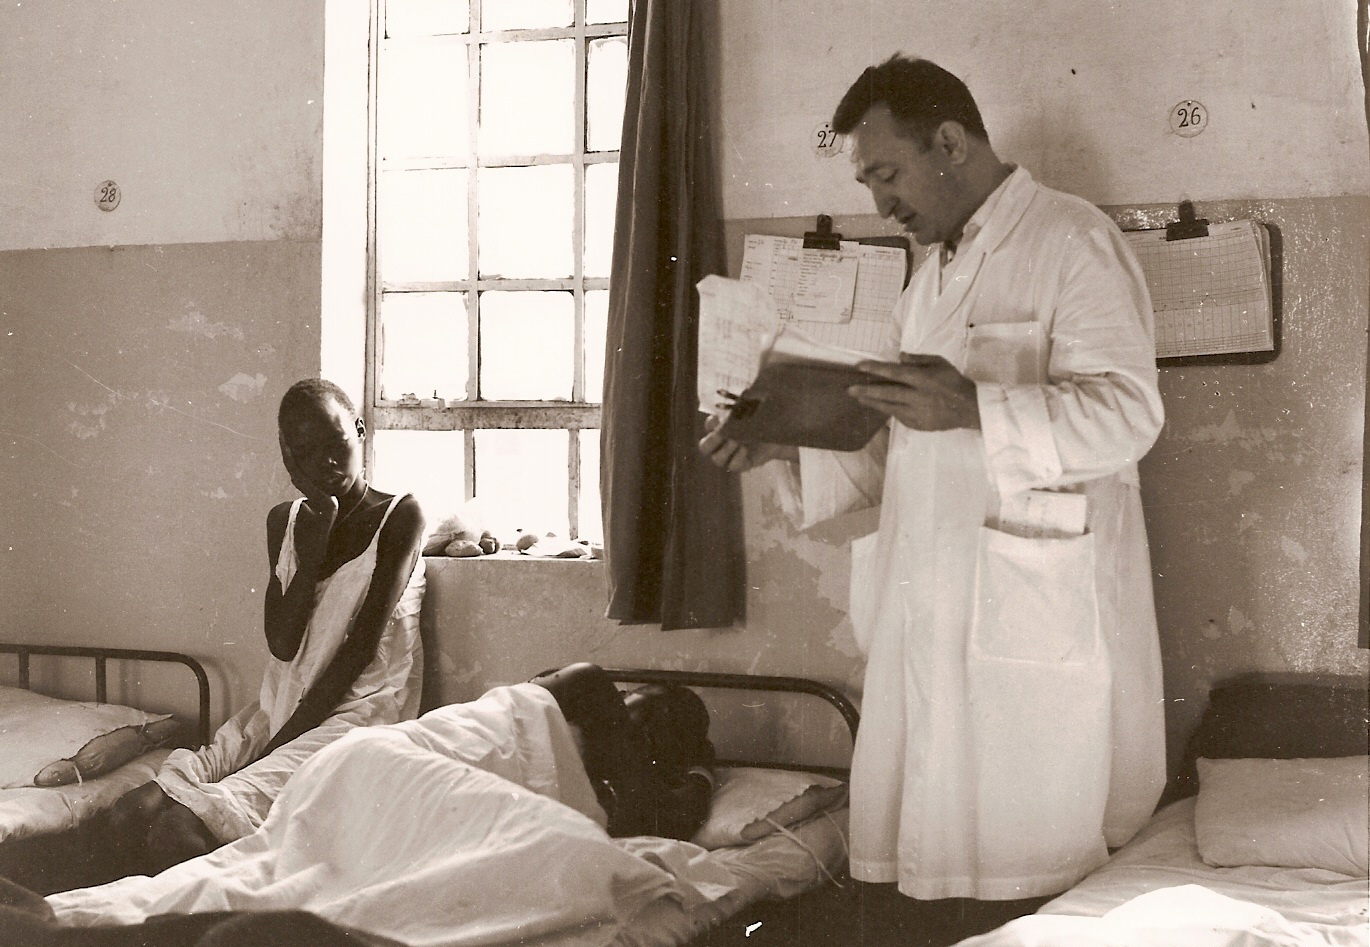 Fr Ambrosoli treats a patient